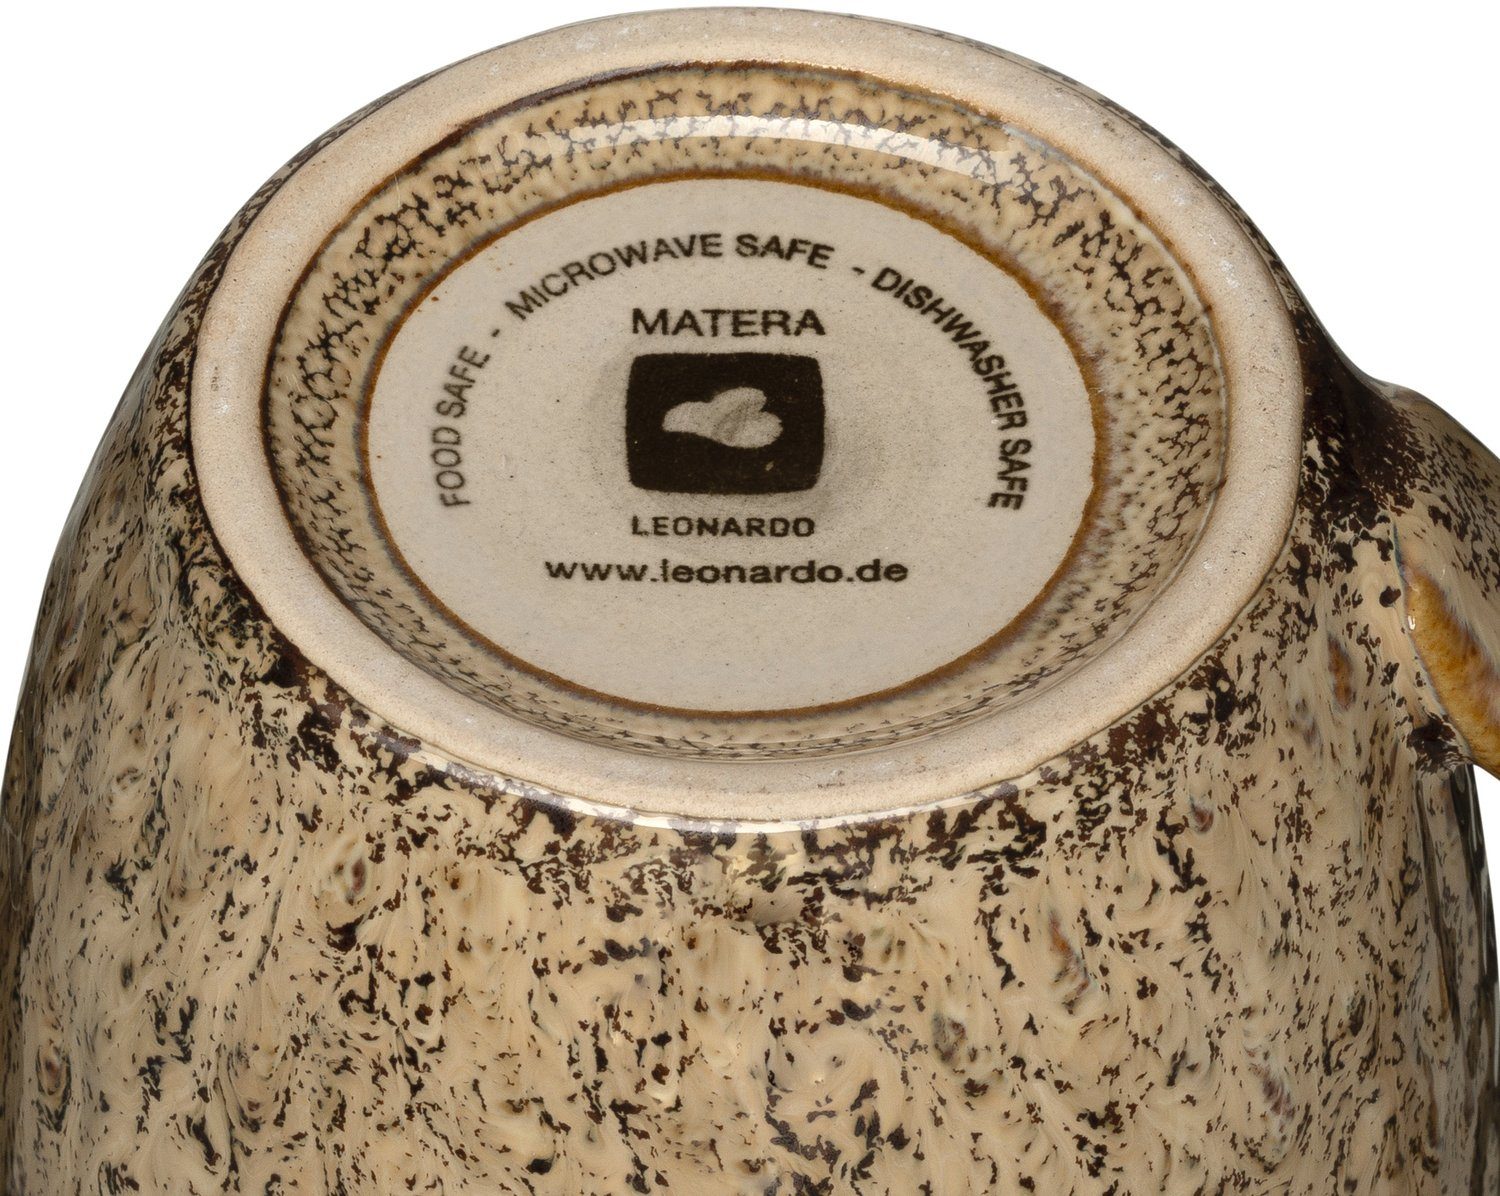 sand Becher Keramik, LEONARDO ml, 430 6-teilig Matera,